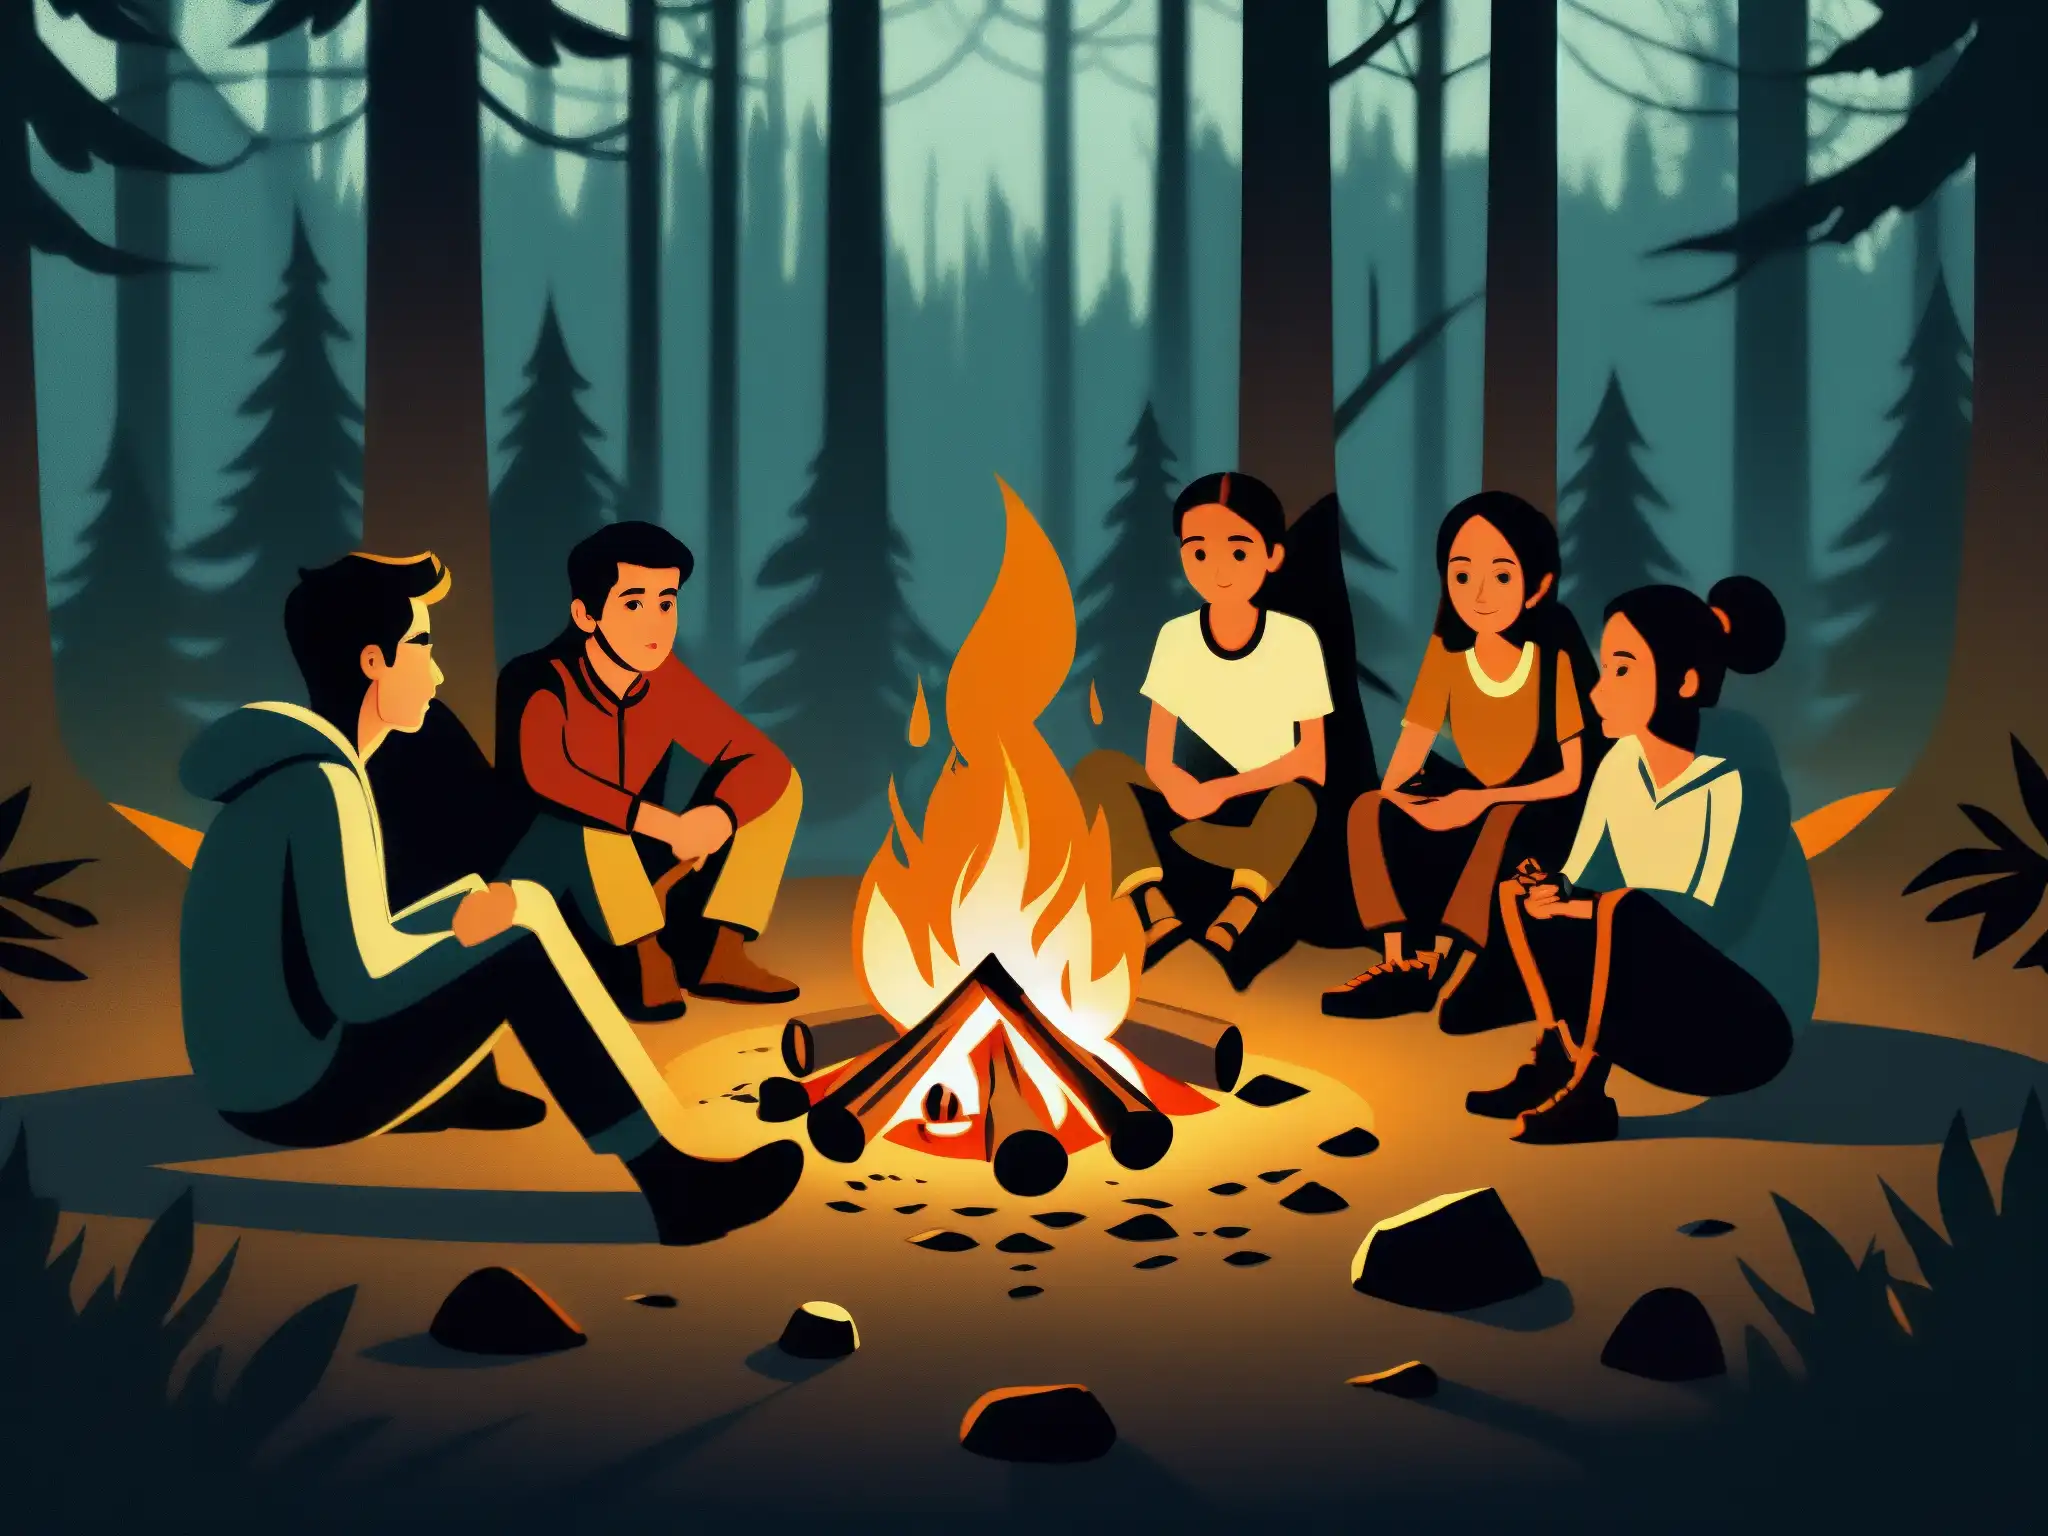 Grupo escucha historia junto fogata en bosque, impacto leyendas urbanas en comunicación palpable